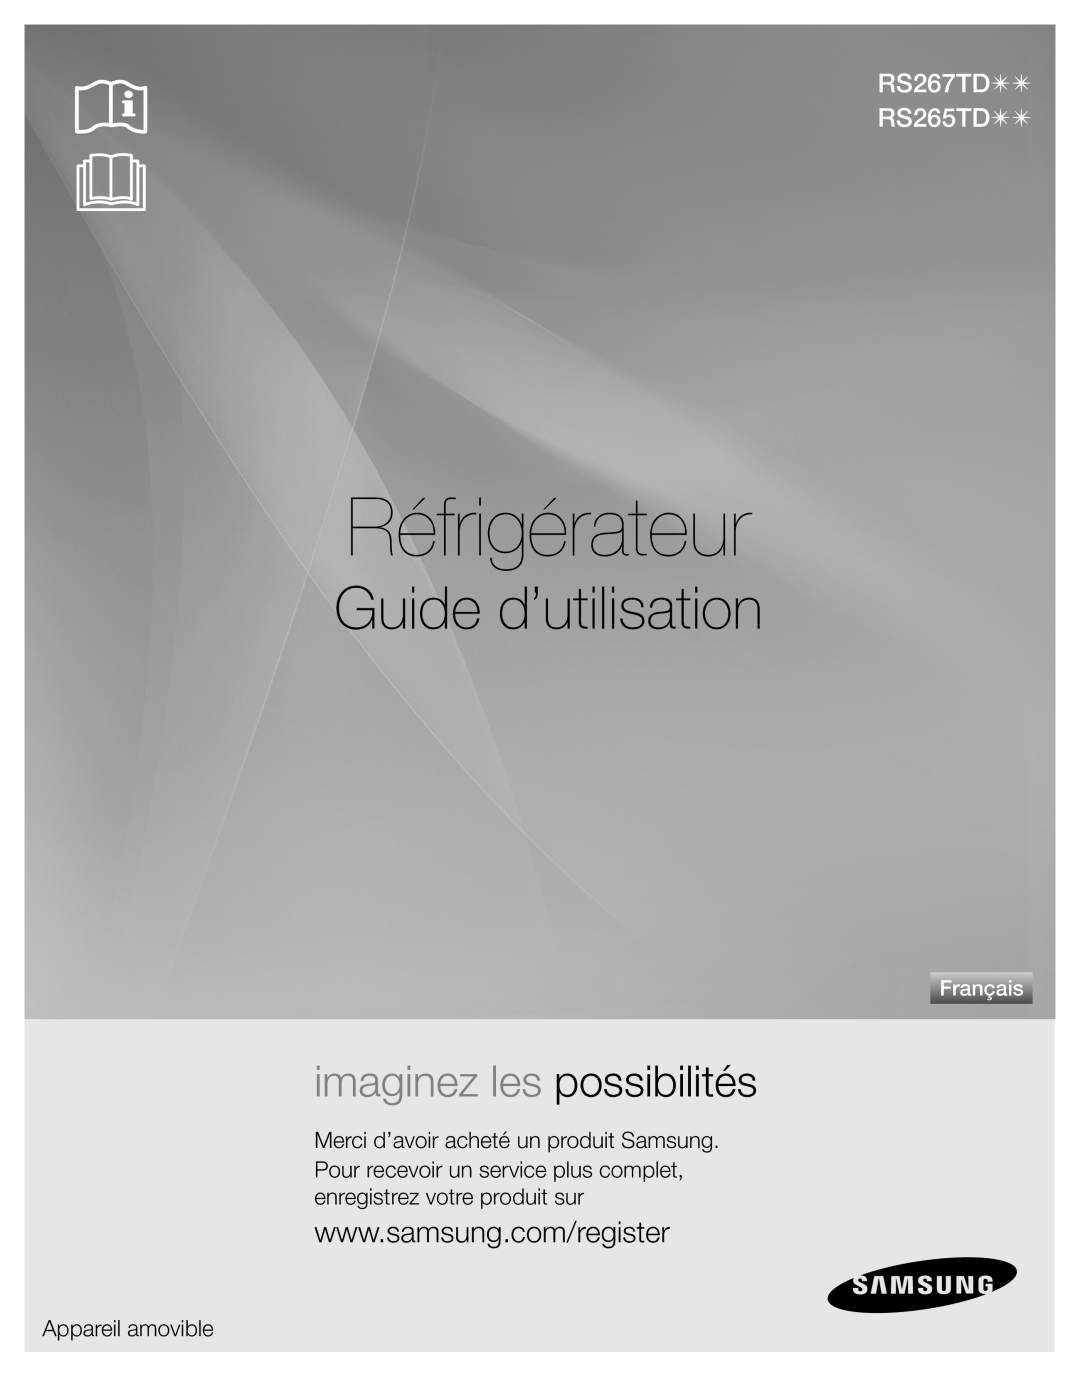 Samsung Réfrigérateur, Guide d’utilisation, RS267TD RS265TD, imaginez les possibilités, Appareil amovible, Français 